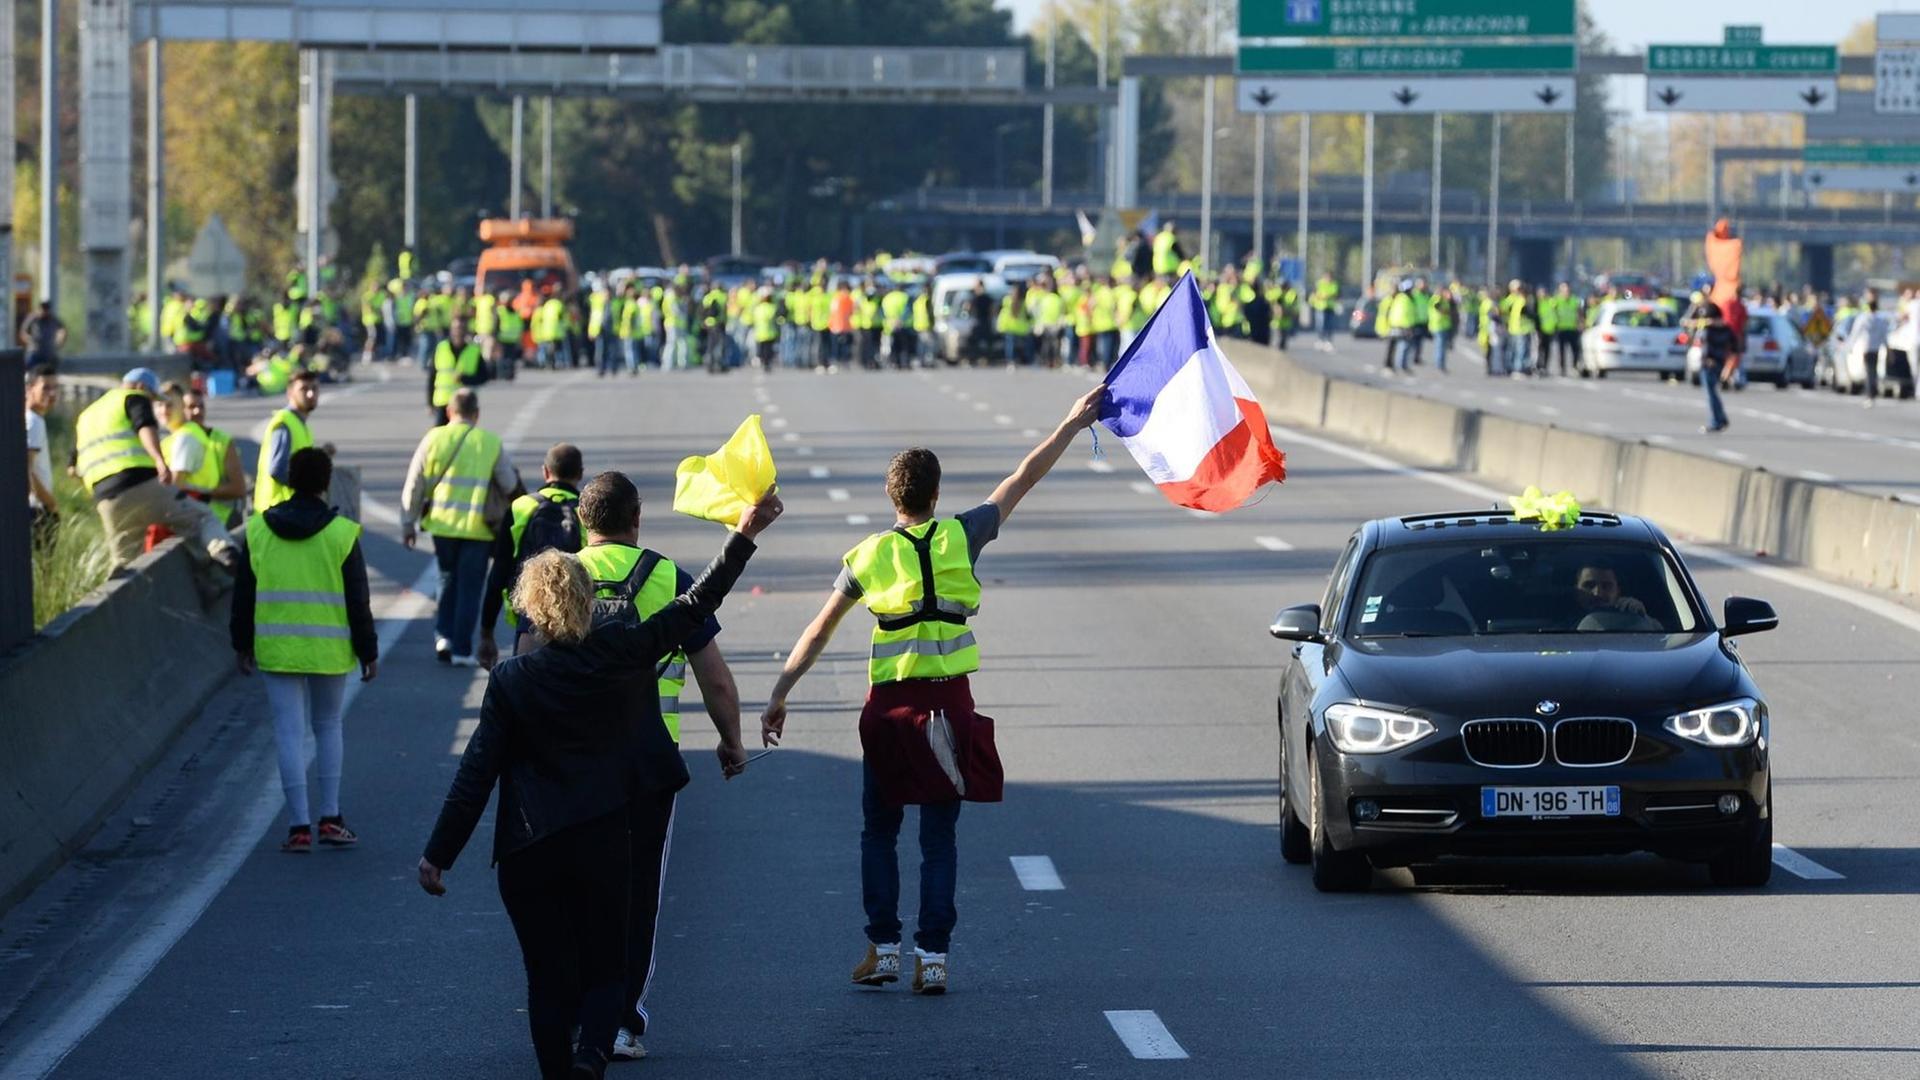 Demonstranten in gelben Warnwesten laufen auf einer mehrspurigen Straße, ein Mann schwenkt die französische Flagge.